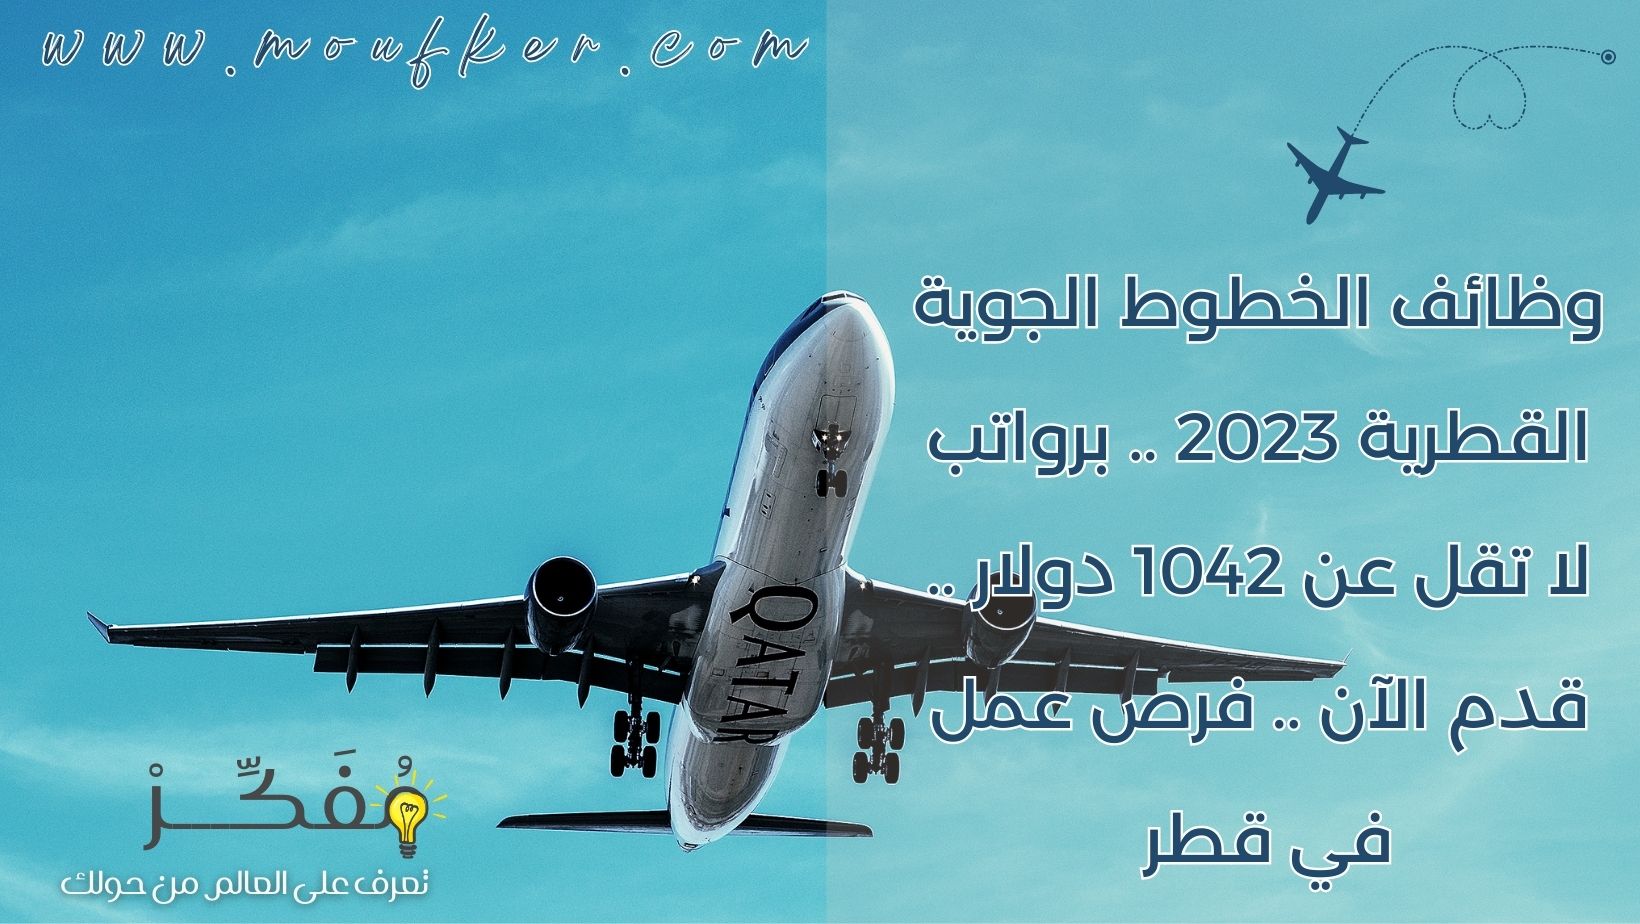 وظائف الخطوط الجوية القطرية 2023 .. برواتب لا تقل عن 1042 دولار .. قدم الآن .. فرص عمل في قطر